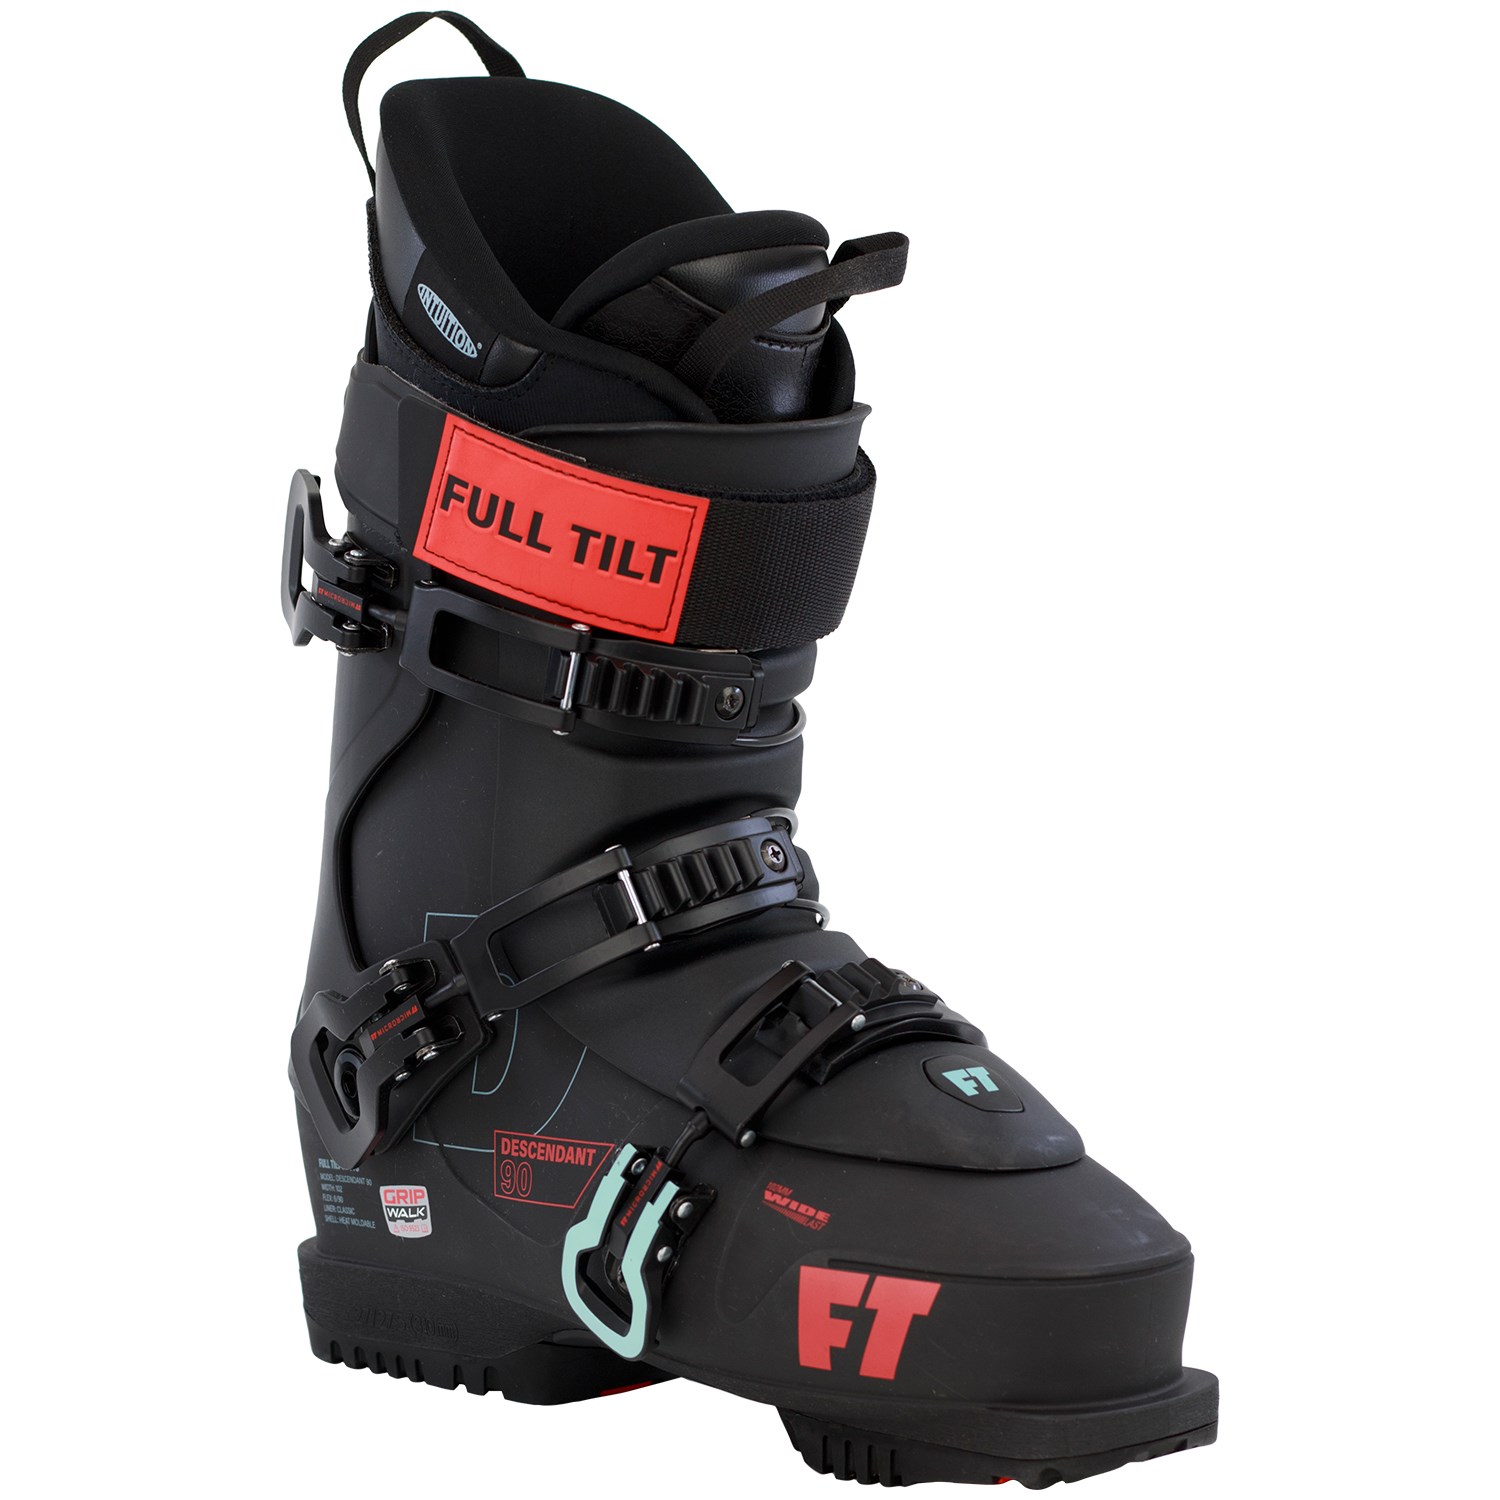 FT フルチルト 15/16クラシック full tilt ski boot スキーブーツ 26.5 